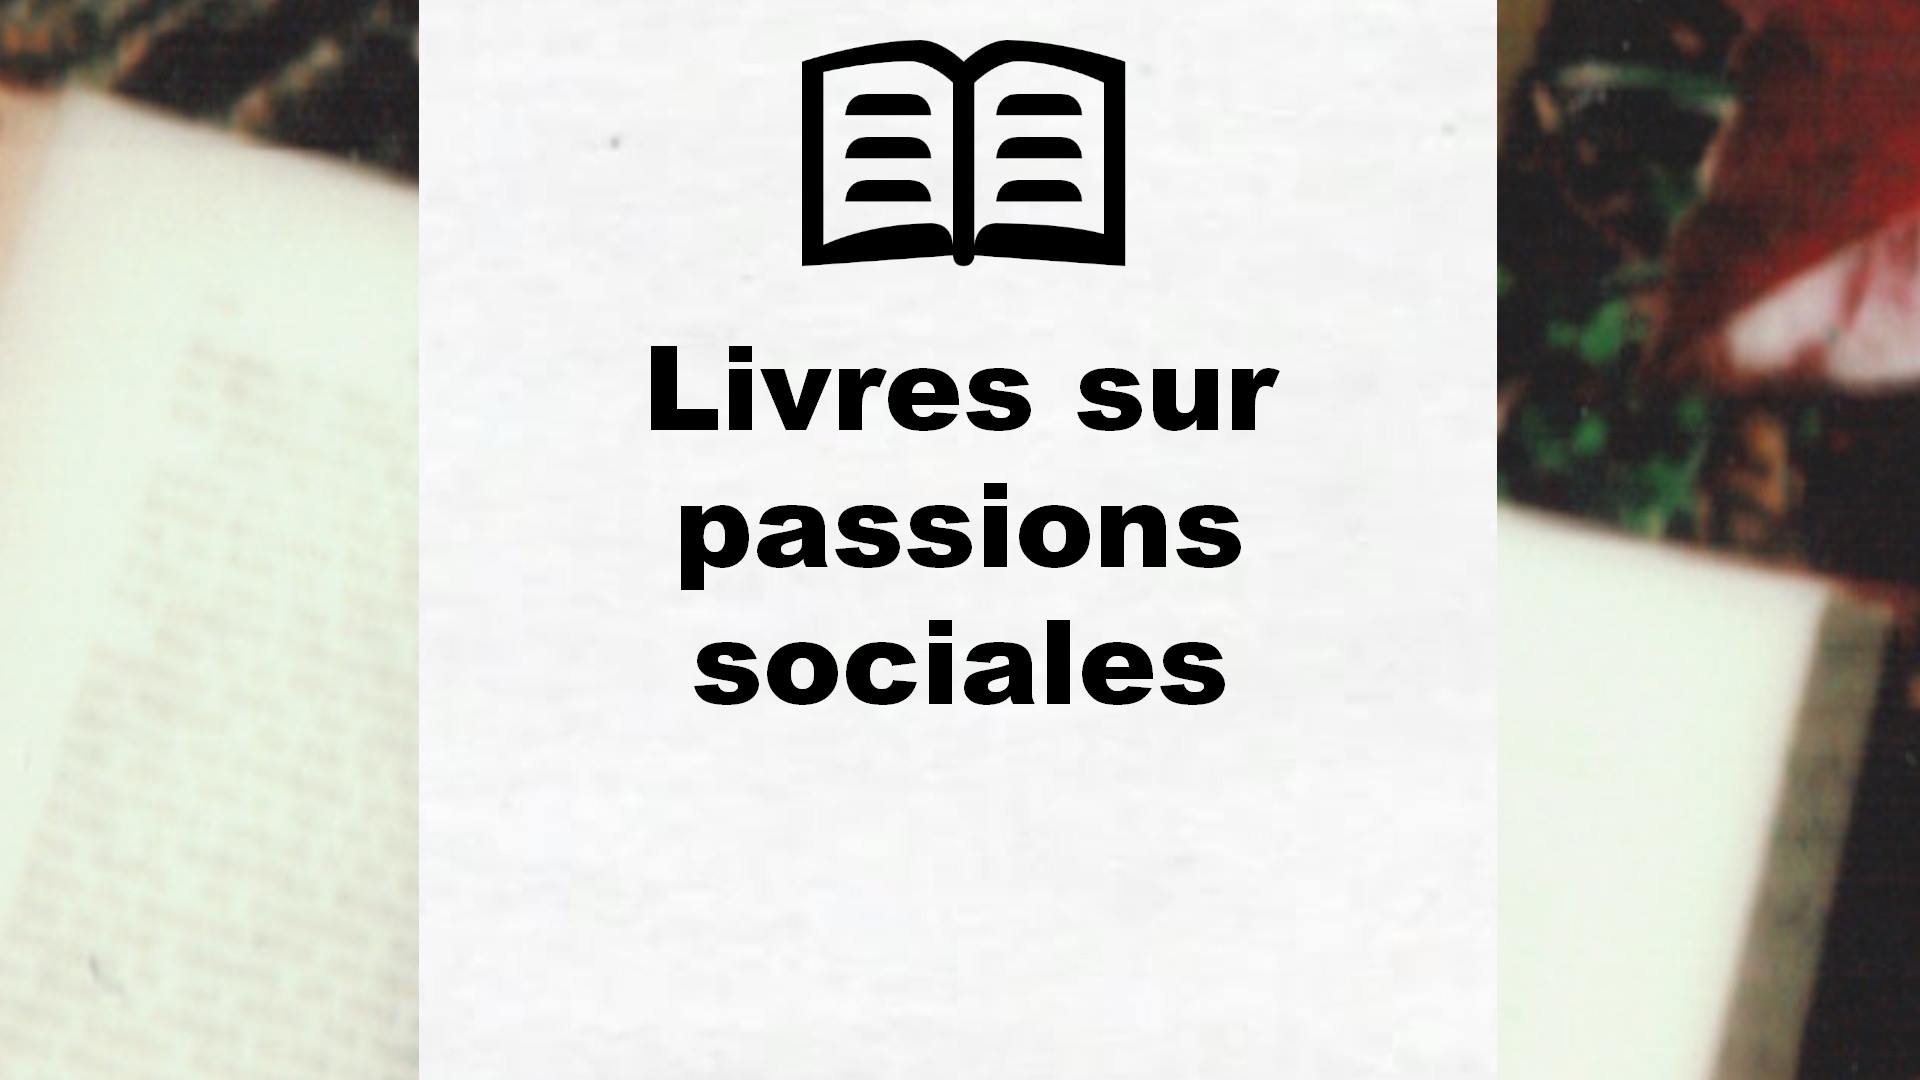 Livres sur passions sociales